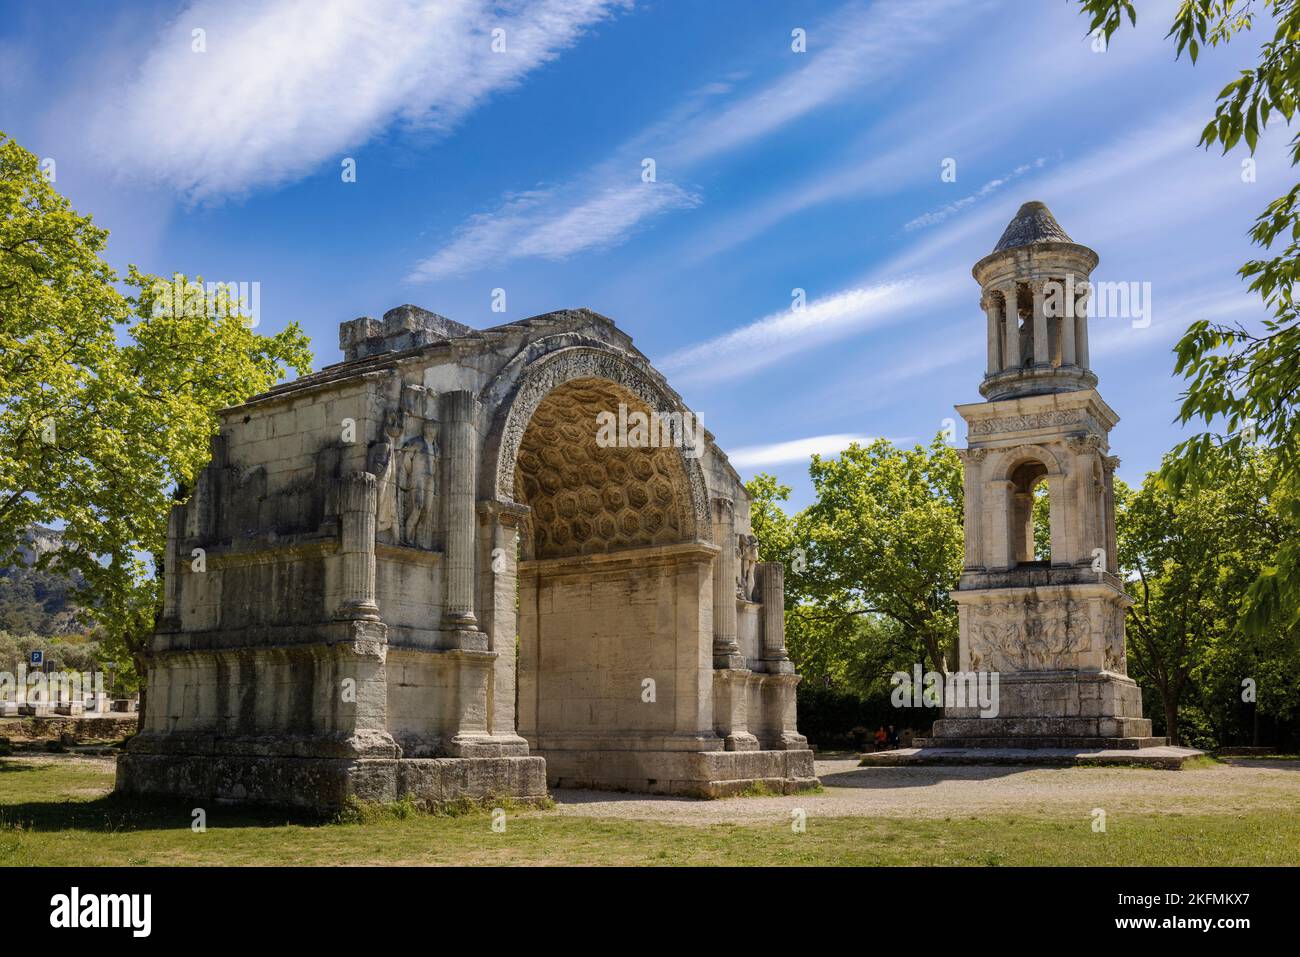 Saint-Rémy-de-Provence, Bouches-du-Rhône, Provenza, Francia. Il mausoleo e arco trionfale, entrambi i monumenti all'ingresso della città romana di Gla Foto Stock